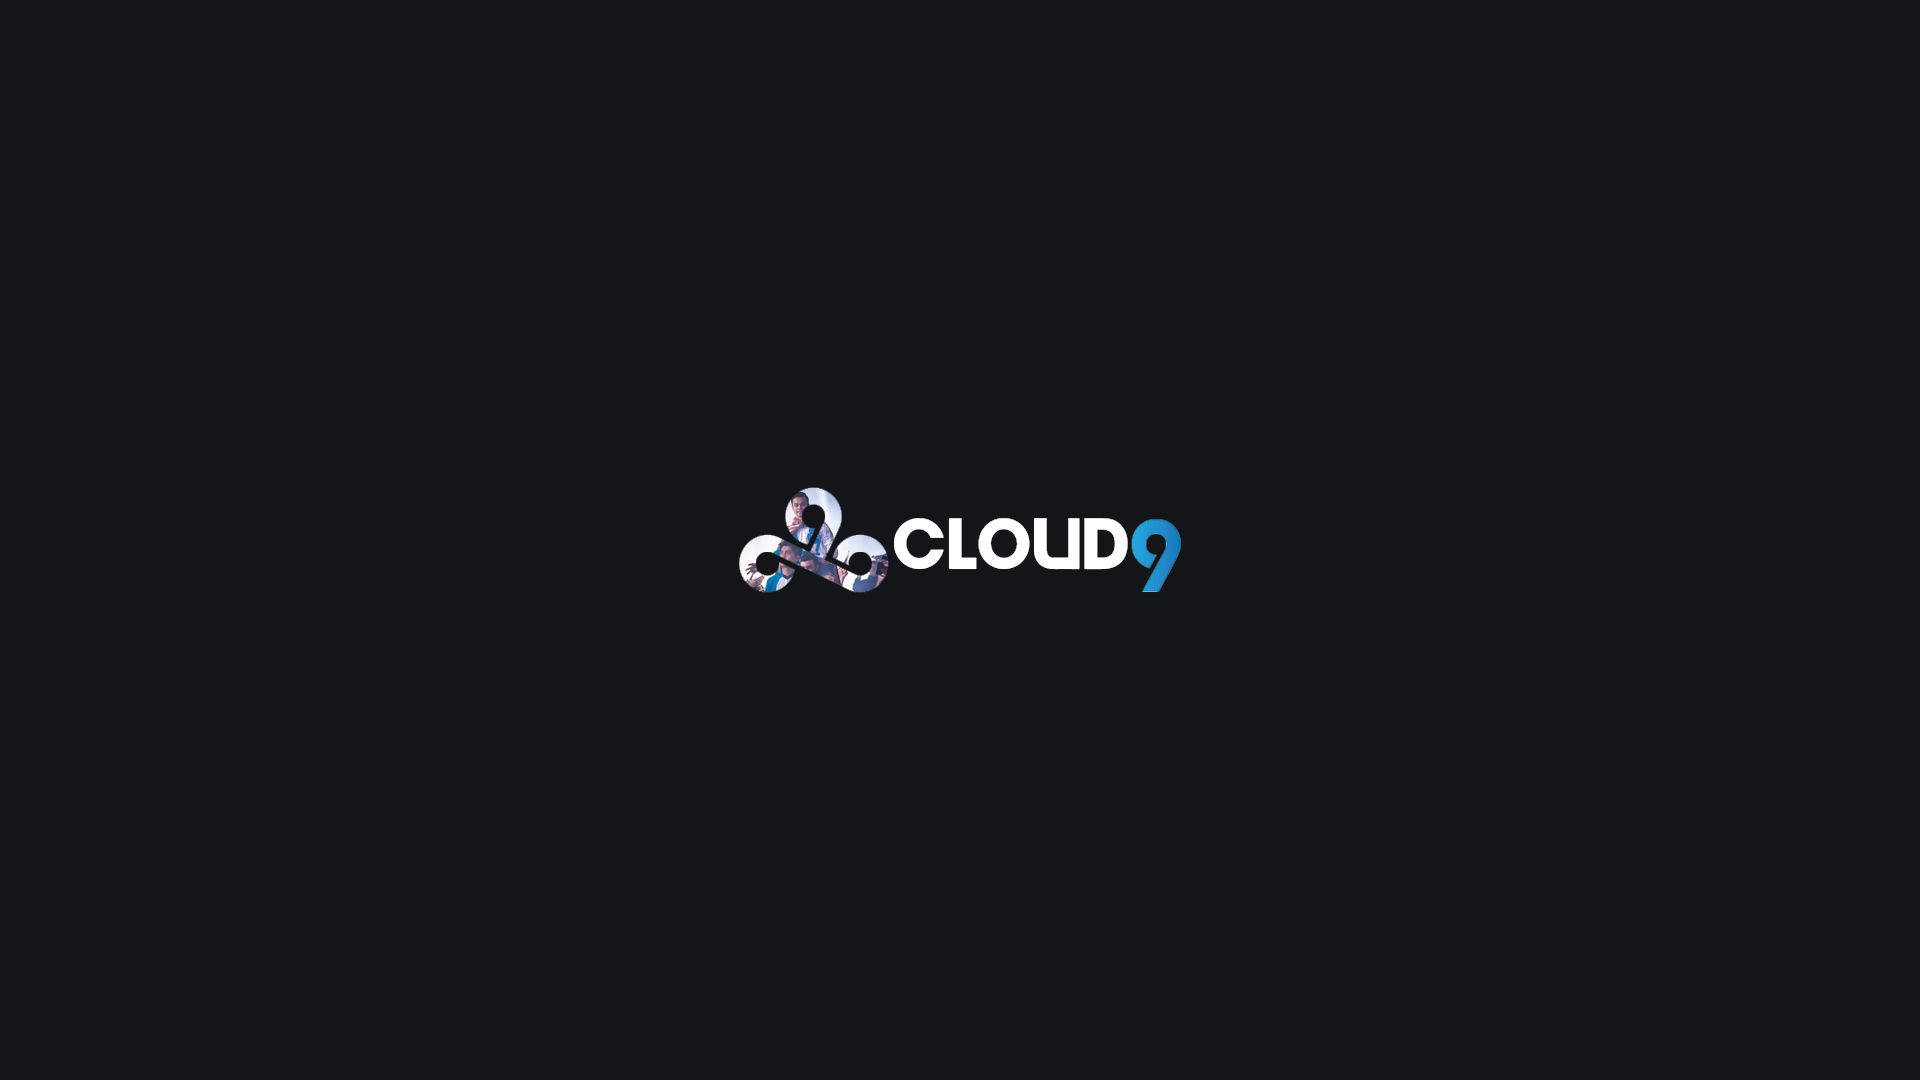 Simple Cloud9 logo wallpaper